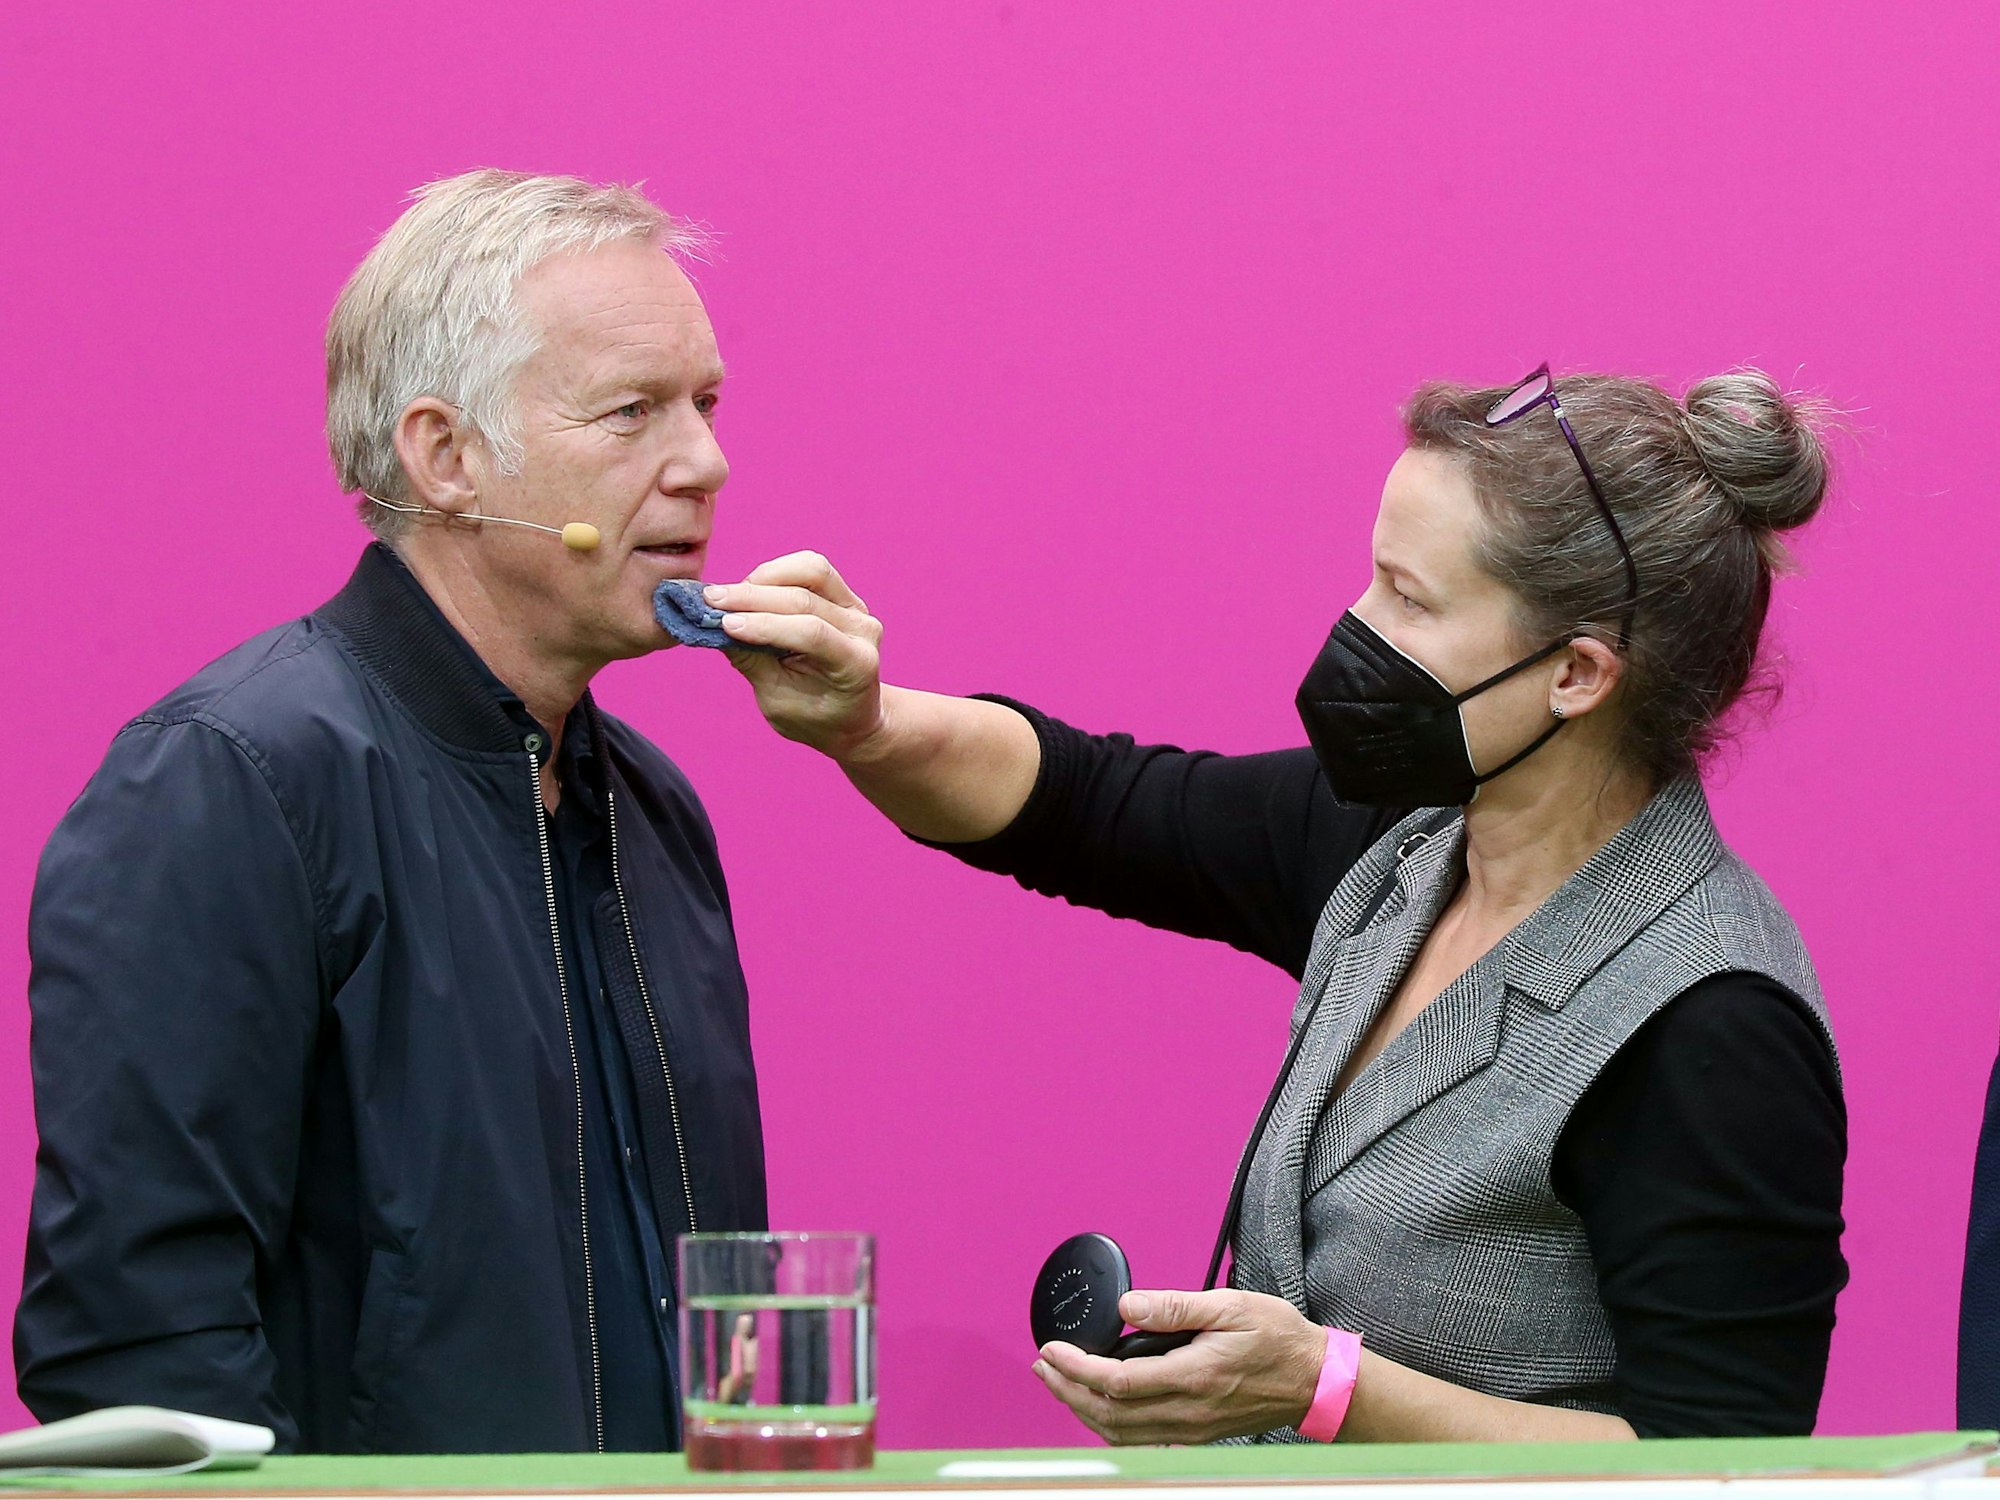 Johannes B. Kerner, WM-Moderator bei Magenta TV, wird von einer Maskenbildnerin abgetupft.